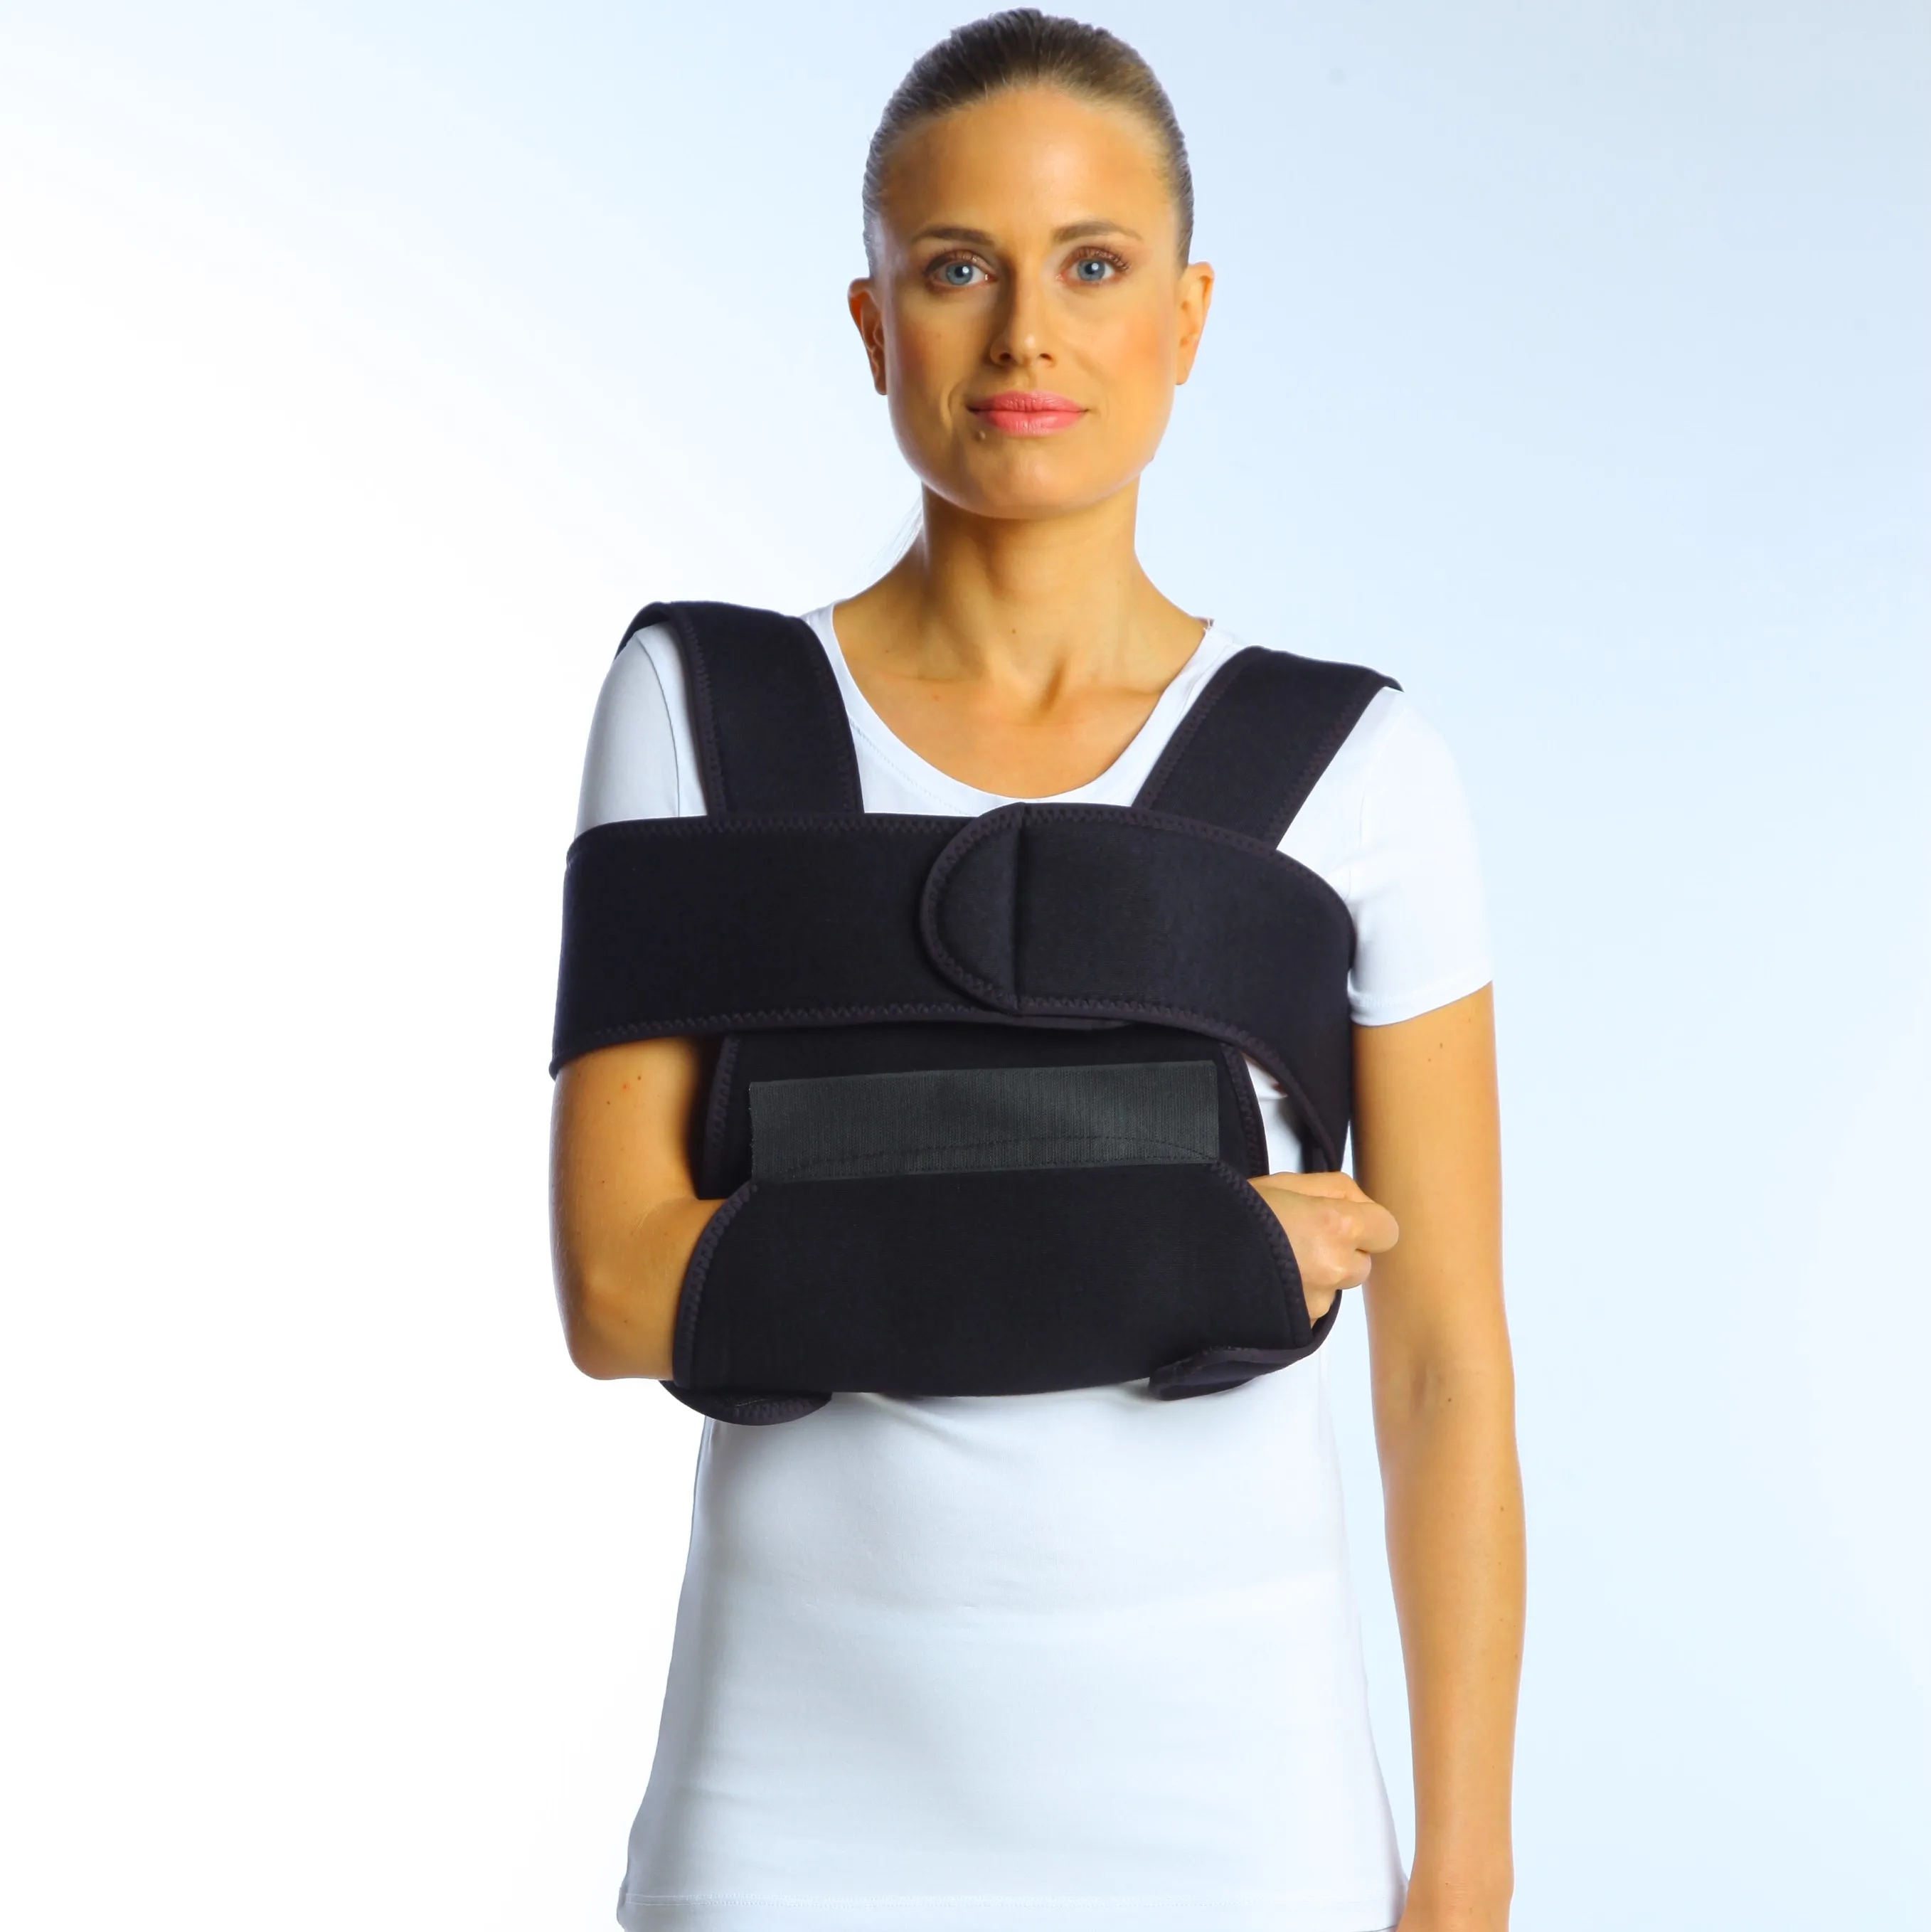 ignorance designer reach Velpeau Bandage - Buy Velpeau Bandage,Sling And Swathe,Shoulder Immobilizer  Product on Alibaba.com